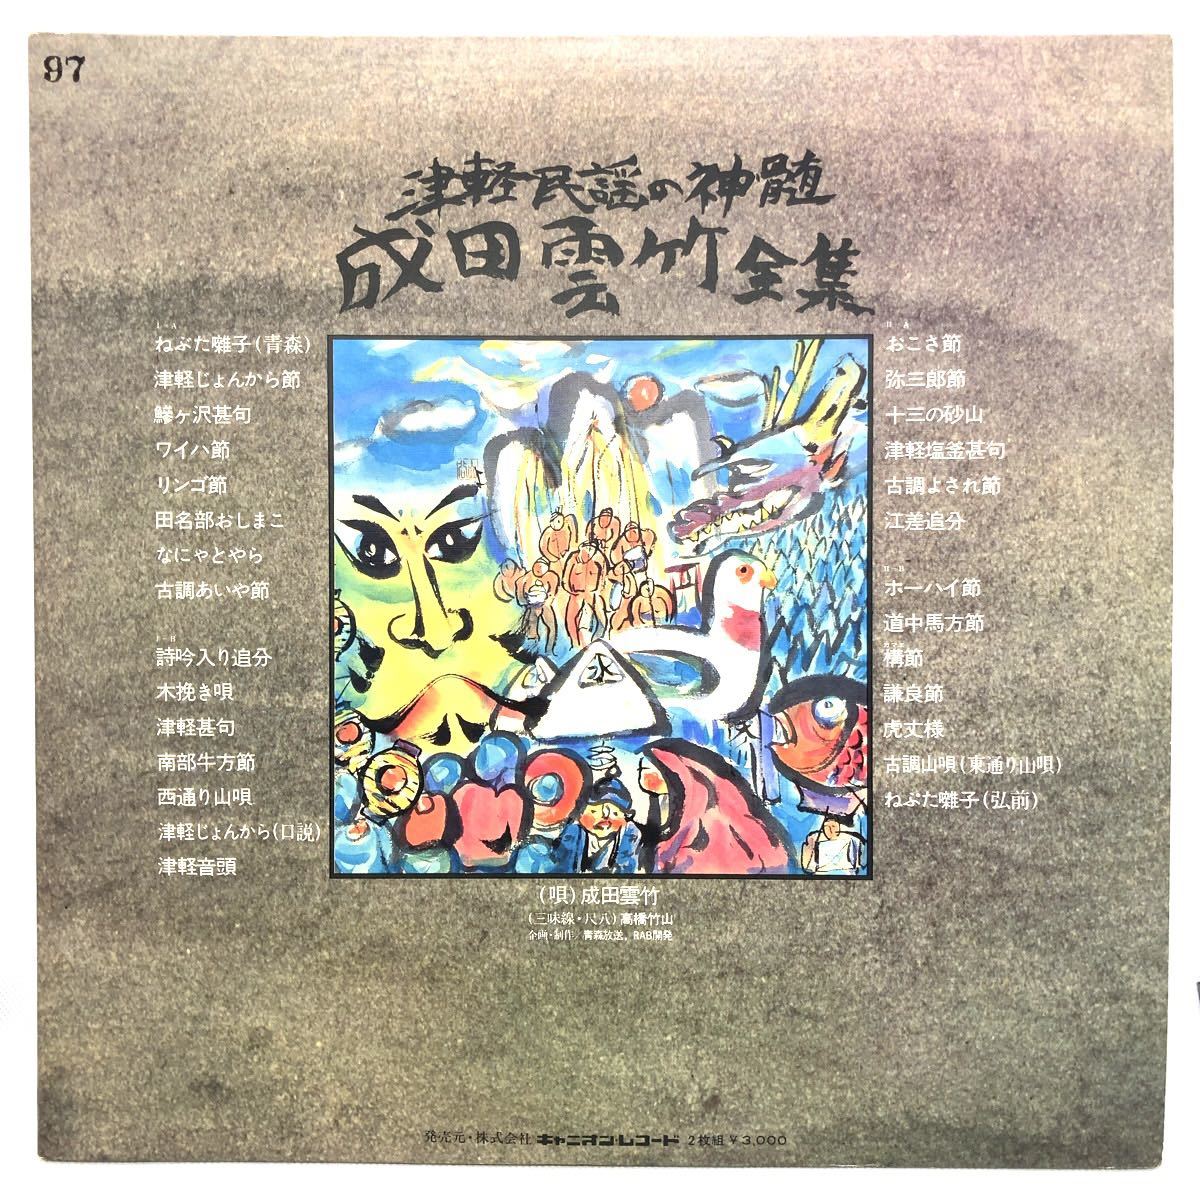 成田雲竹 全集 LP レコード 2枚組 津軽民謡の真髄 三味線・尺八_画像2